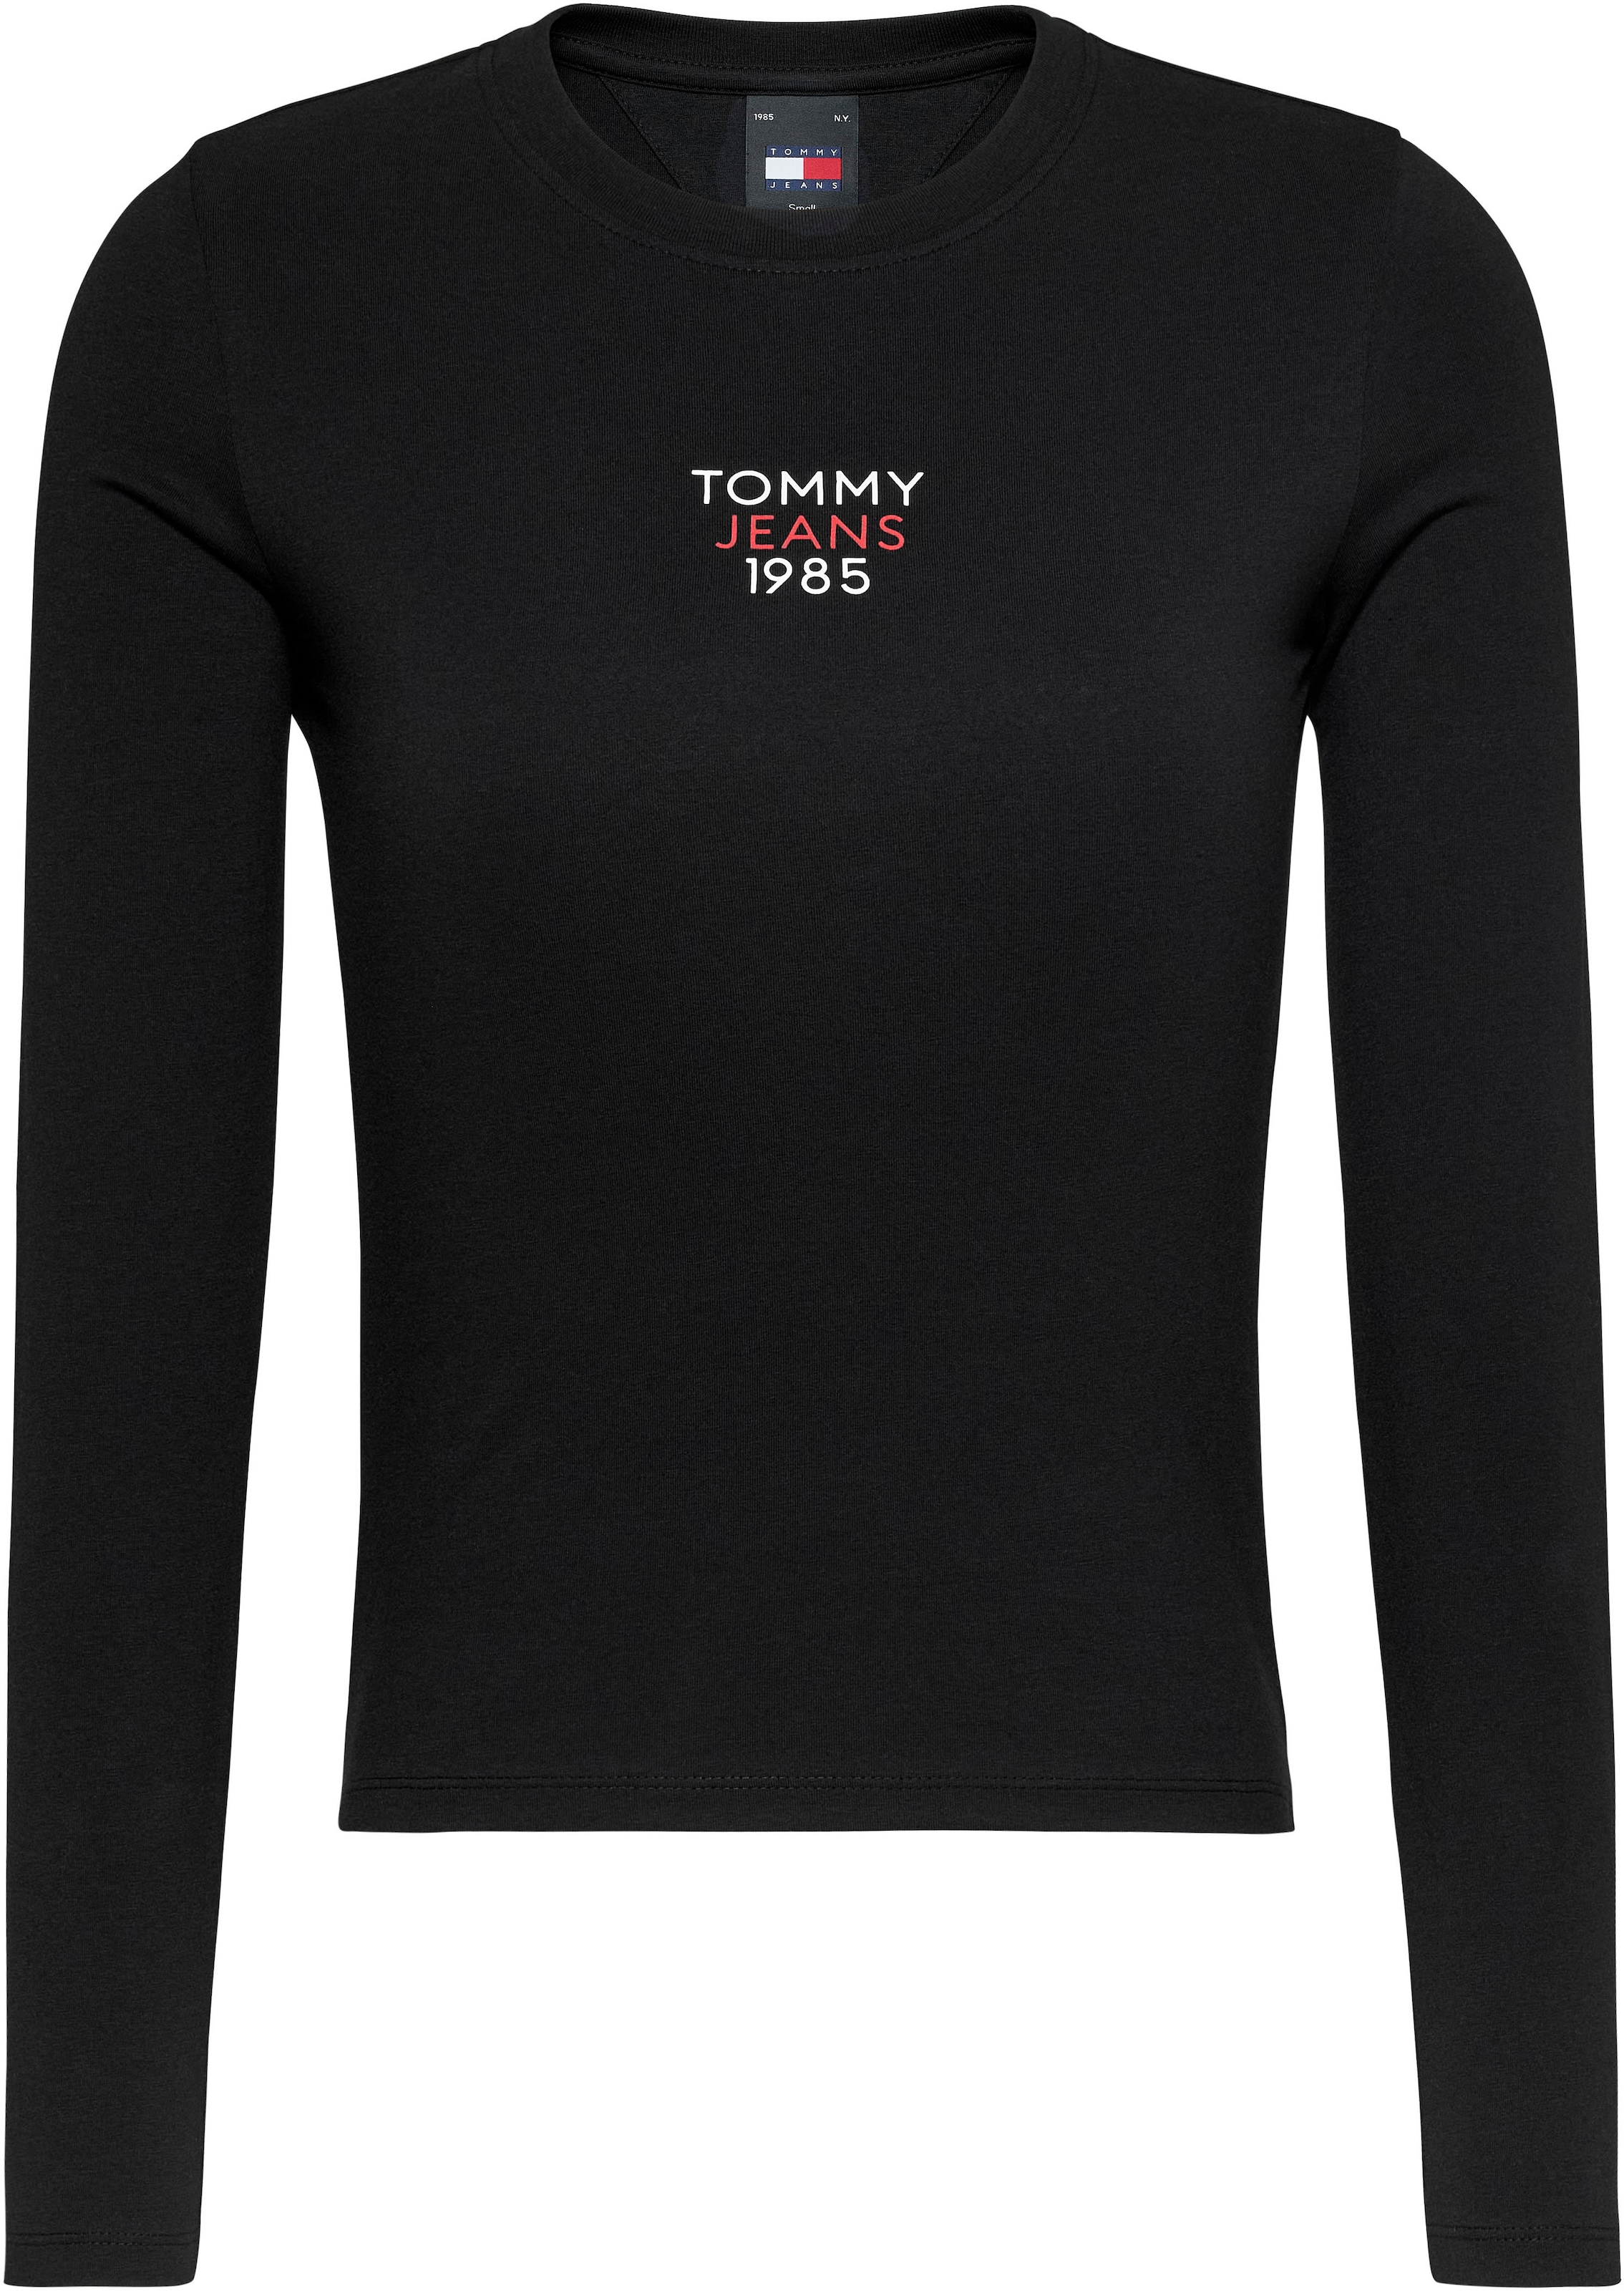 TOMMY JEANS Tommy Džinsai marškinėliai ilgomis ran...